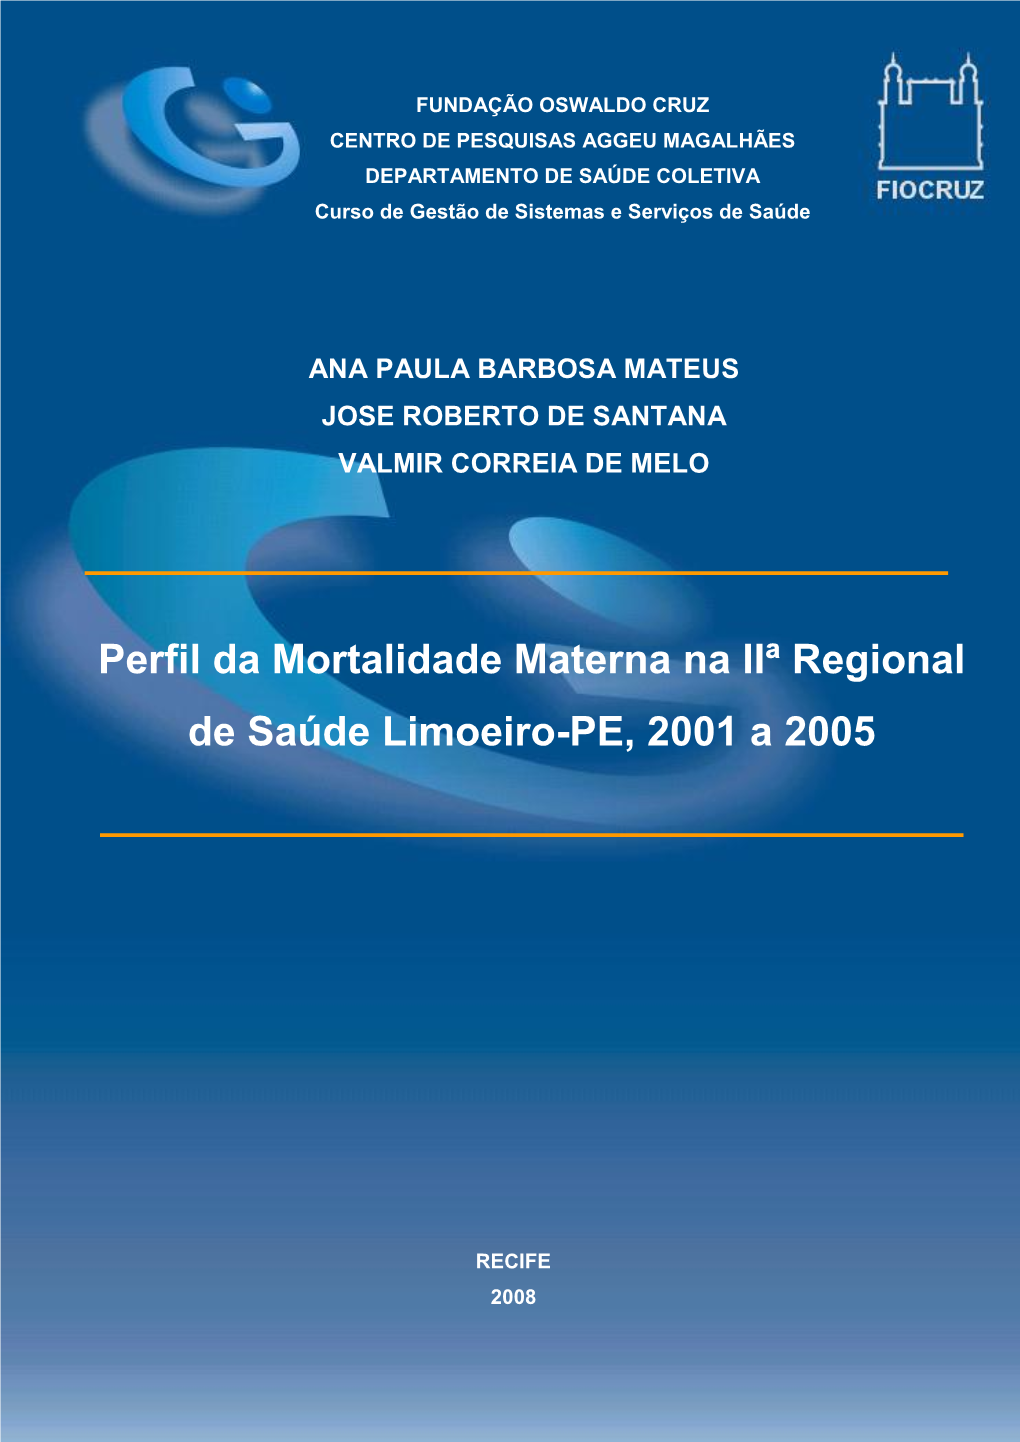 Perfil Da Mortalidade Materna Na IIª Regional De Saúde Limoeiro-PE, 2001 a 2005